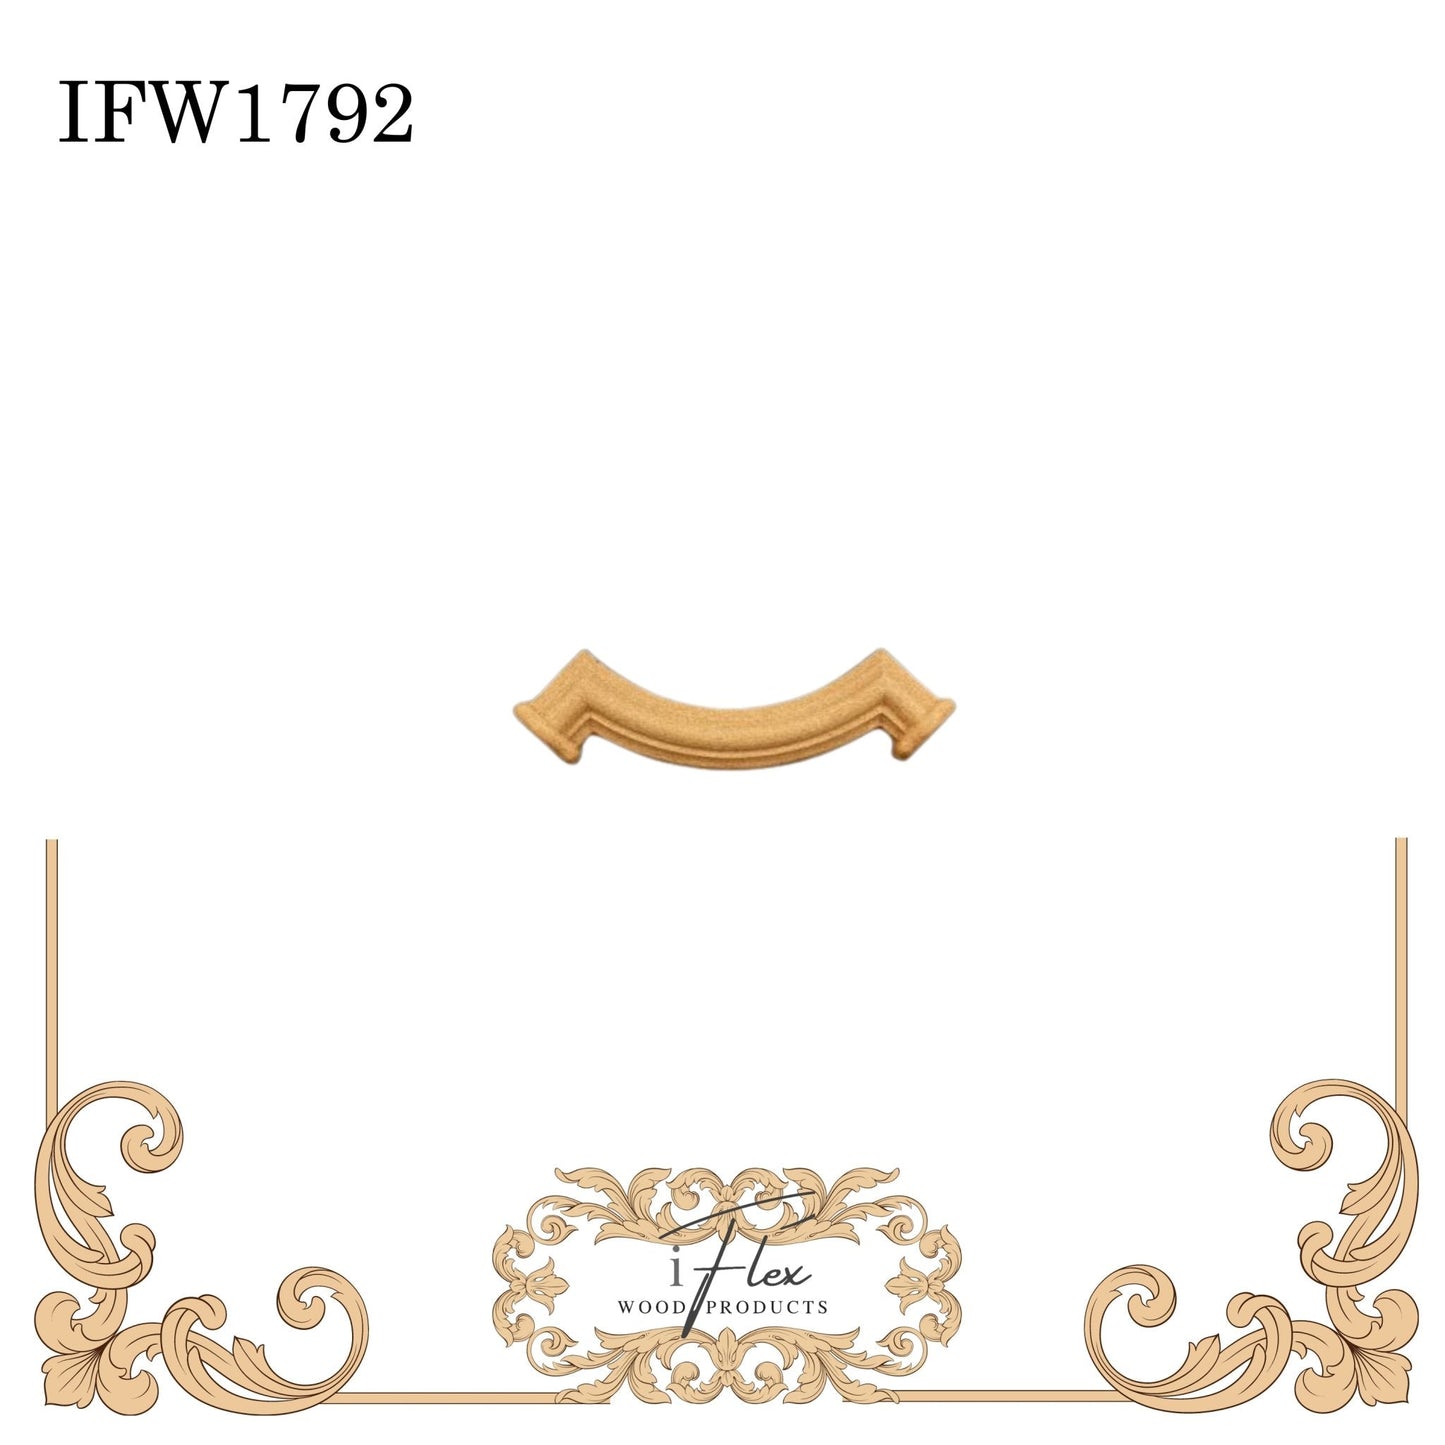 IFW 1792